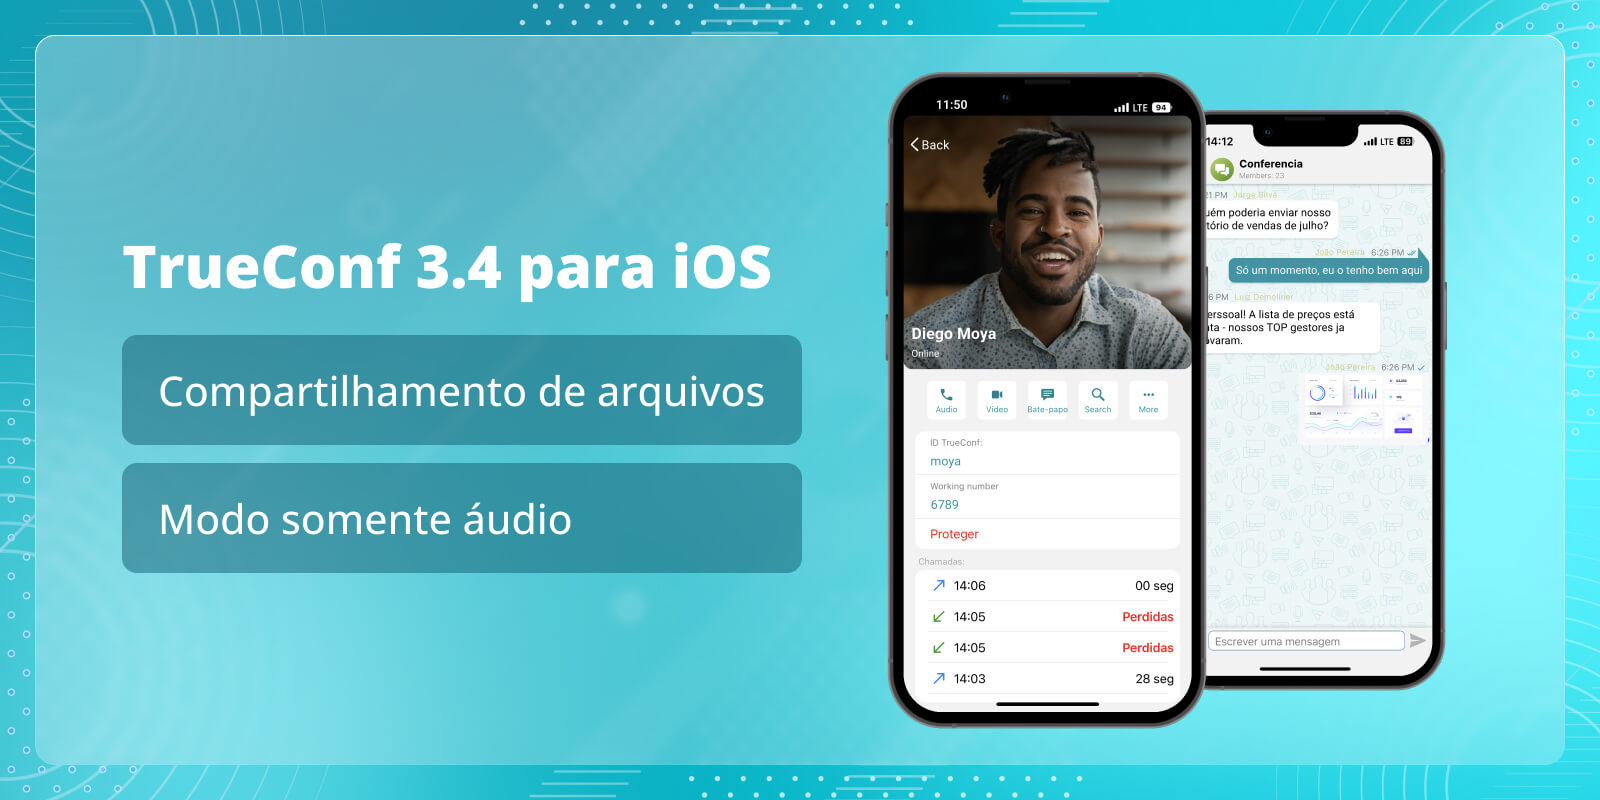 TrueConf 3.4 para iOS: compartilhamento de arquivos e modo somente áudio 5